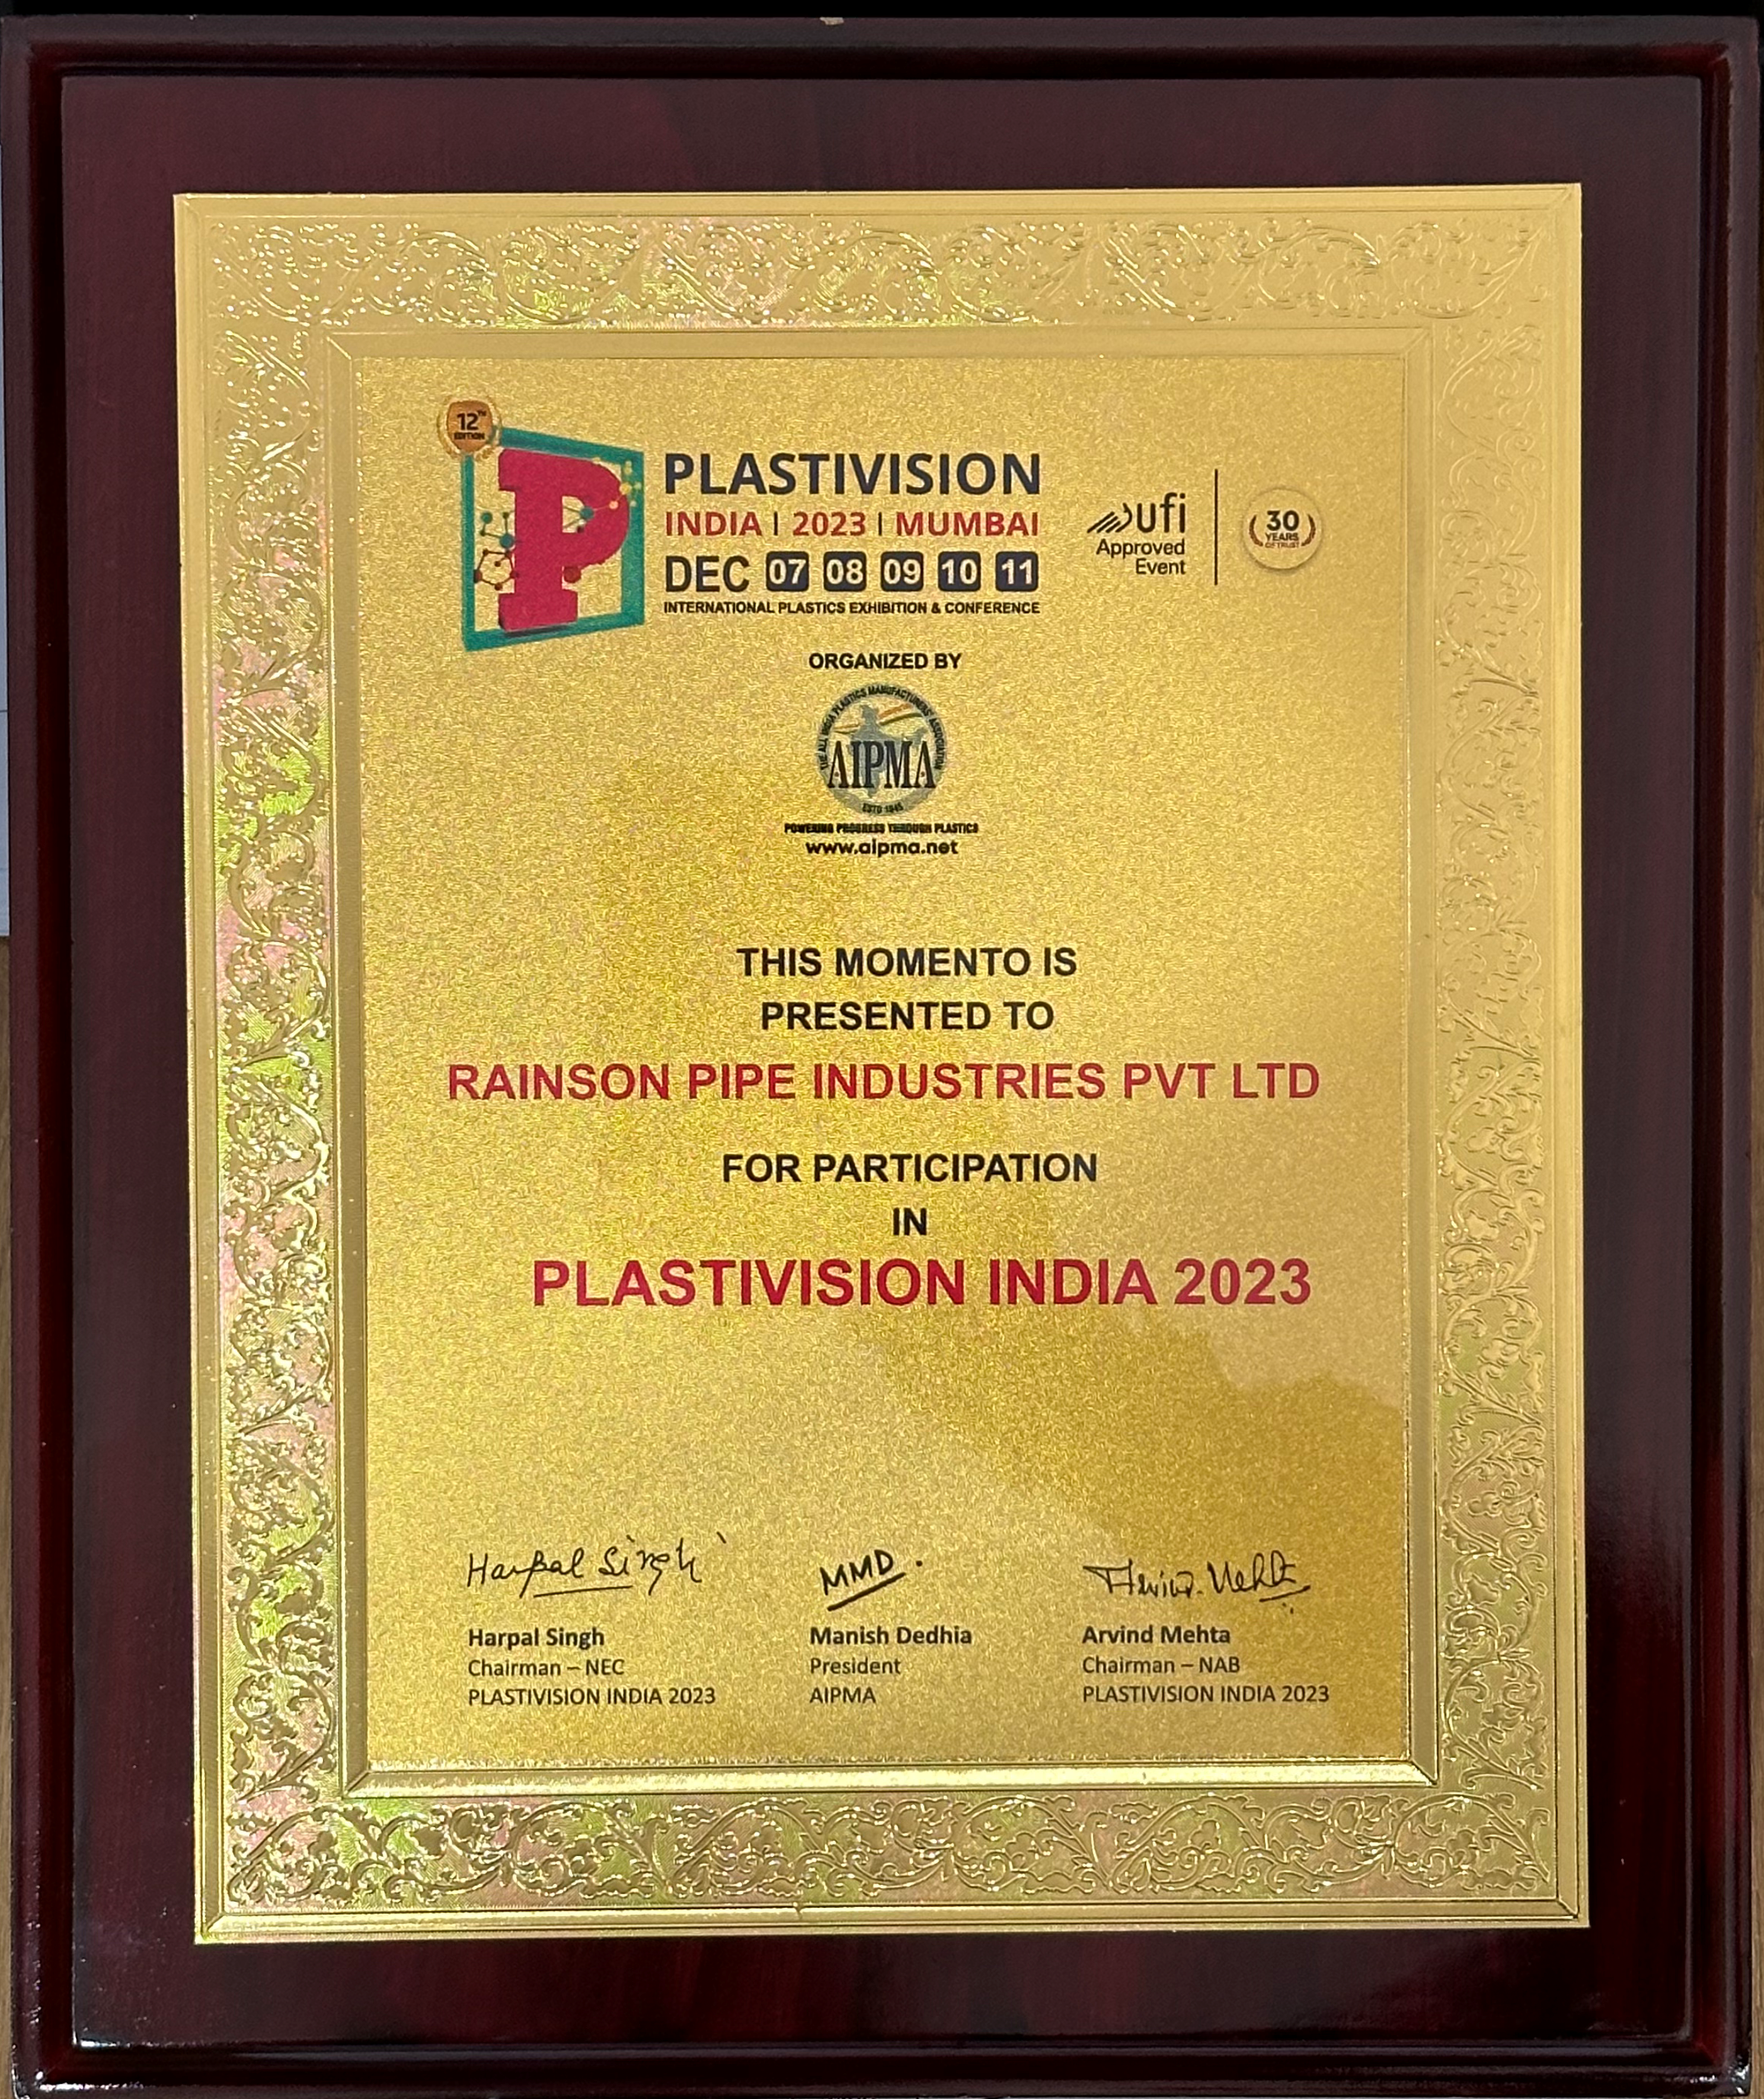 Rainson Pipe Industries Pvt. Ltd. participated in Plastivision India 2023